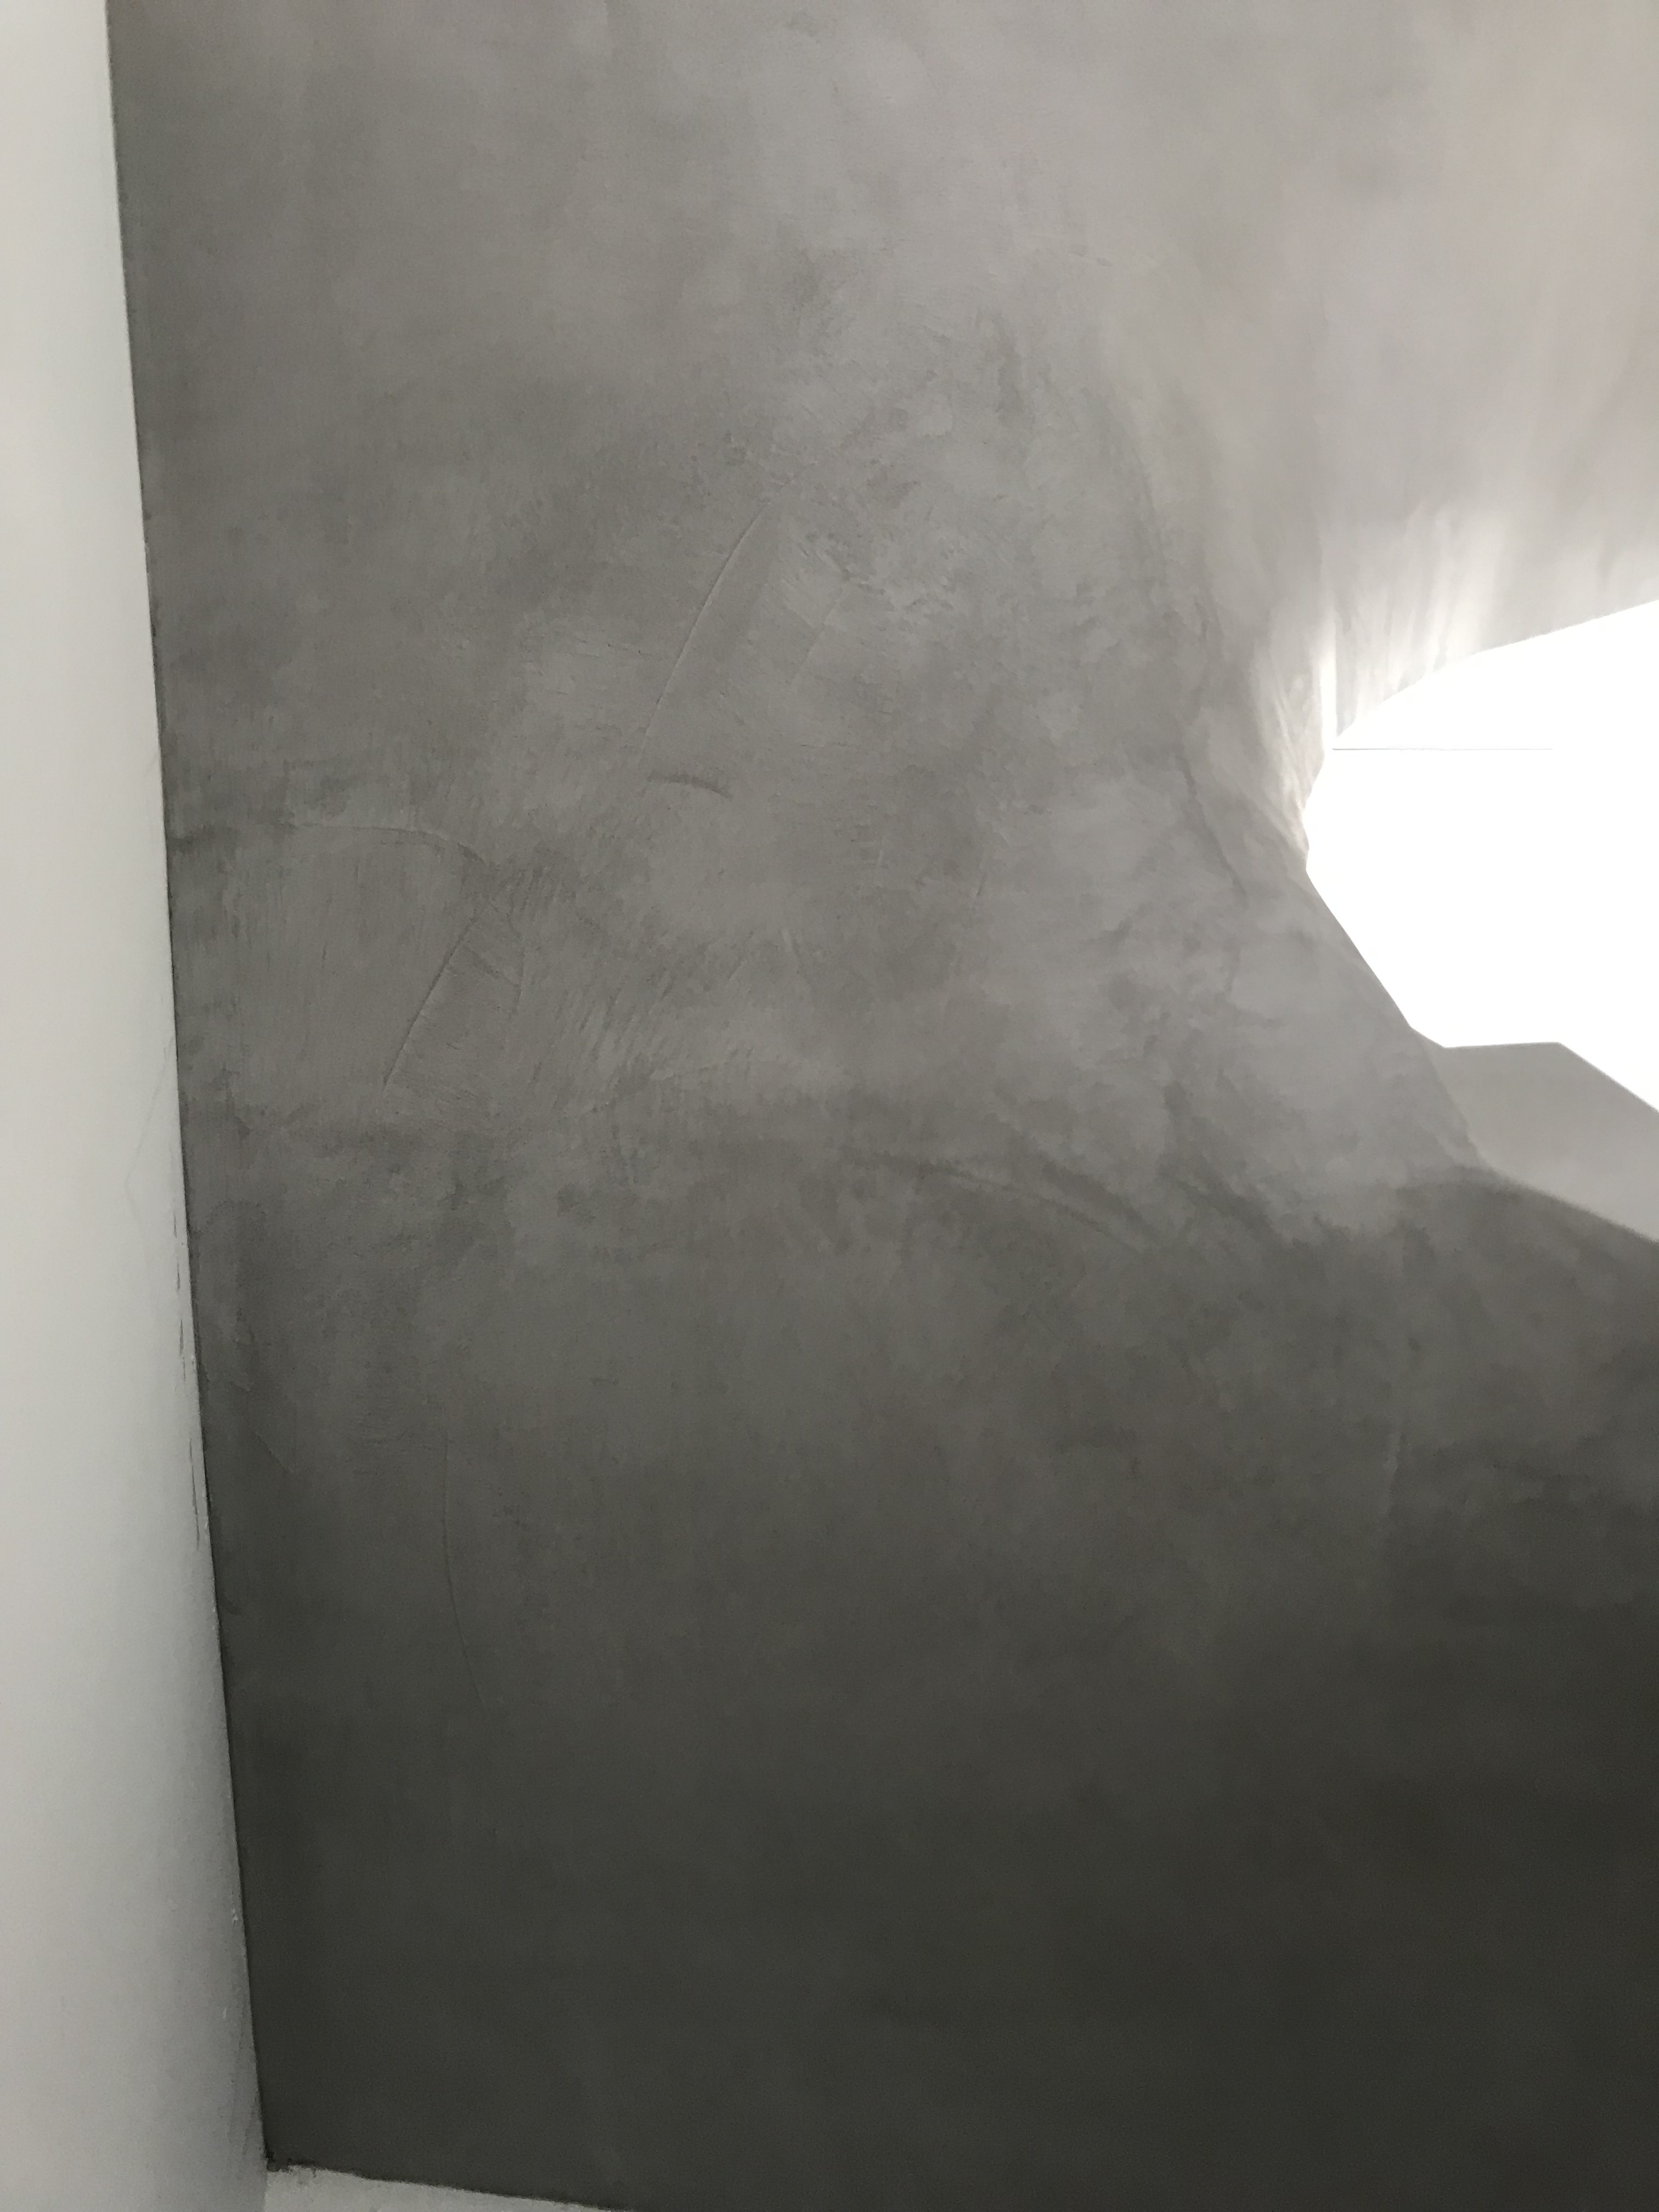 magnifique escalier à paillasse trois quart tournant en béton ciré couleur fossile à gujan-mestras pour un architecte